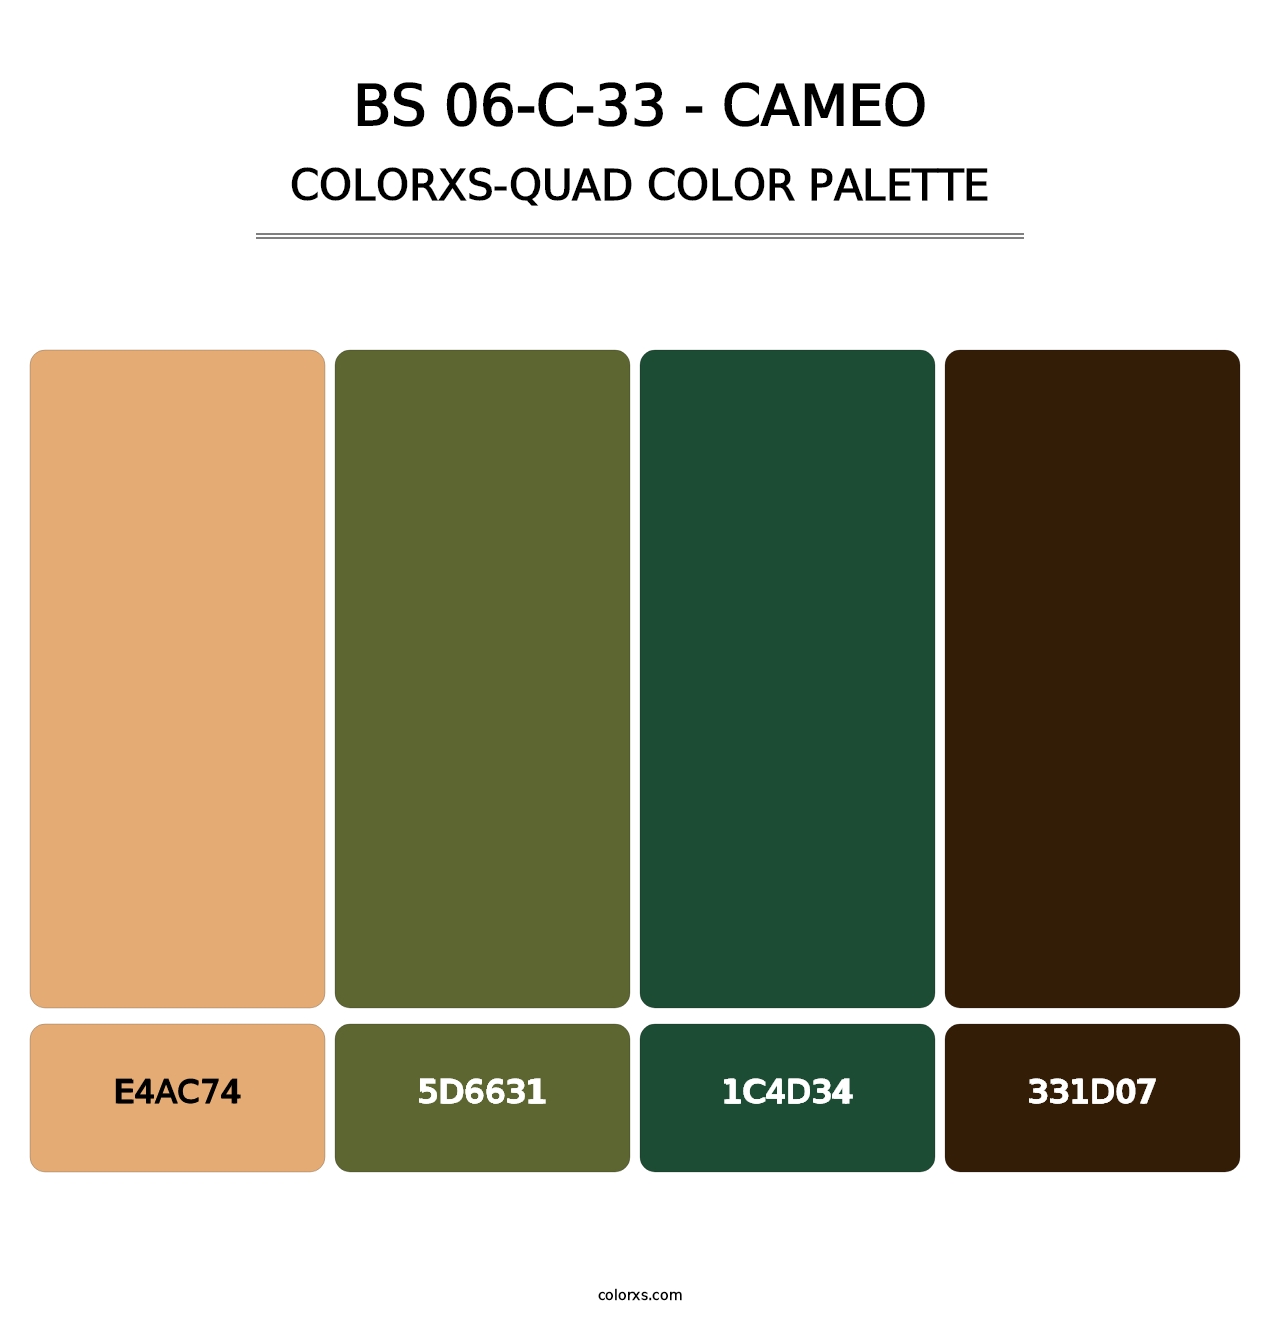 BS 06-C-33 - Cameo - Colorxs Quad Palette